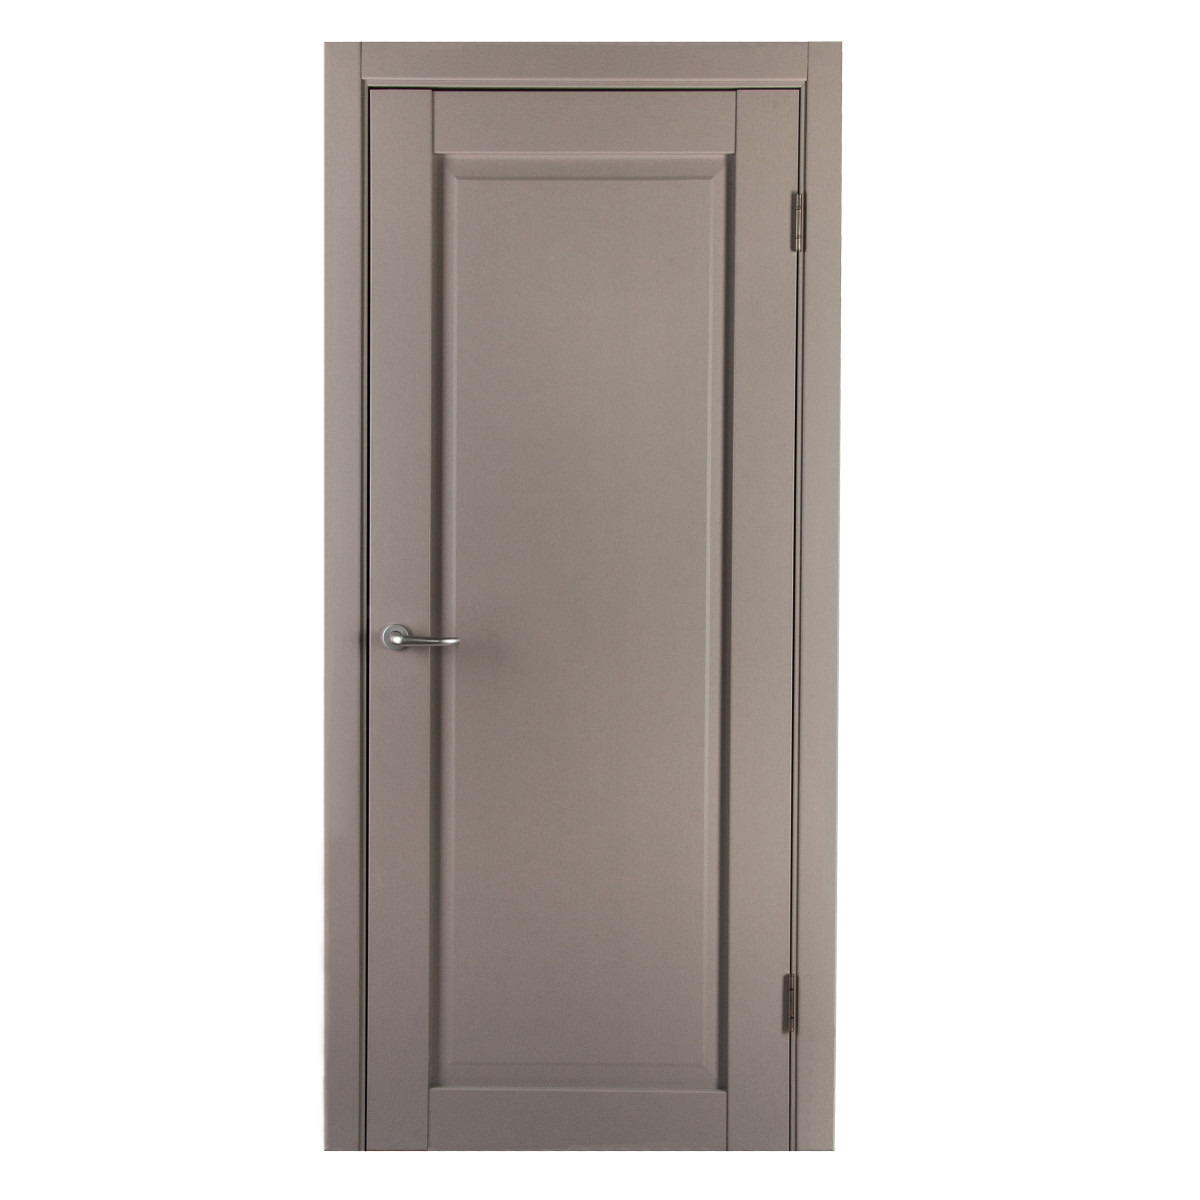 Дверь межкомнатная с фурнитурой Пьемонт 60х200 см, Hardflex, цвет платина светлая